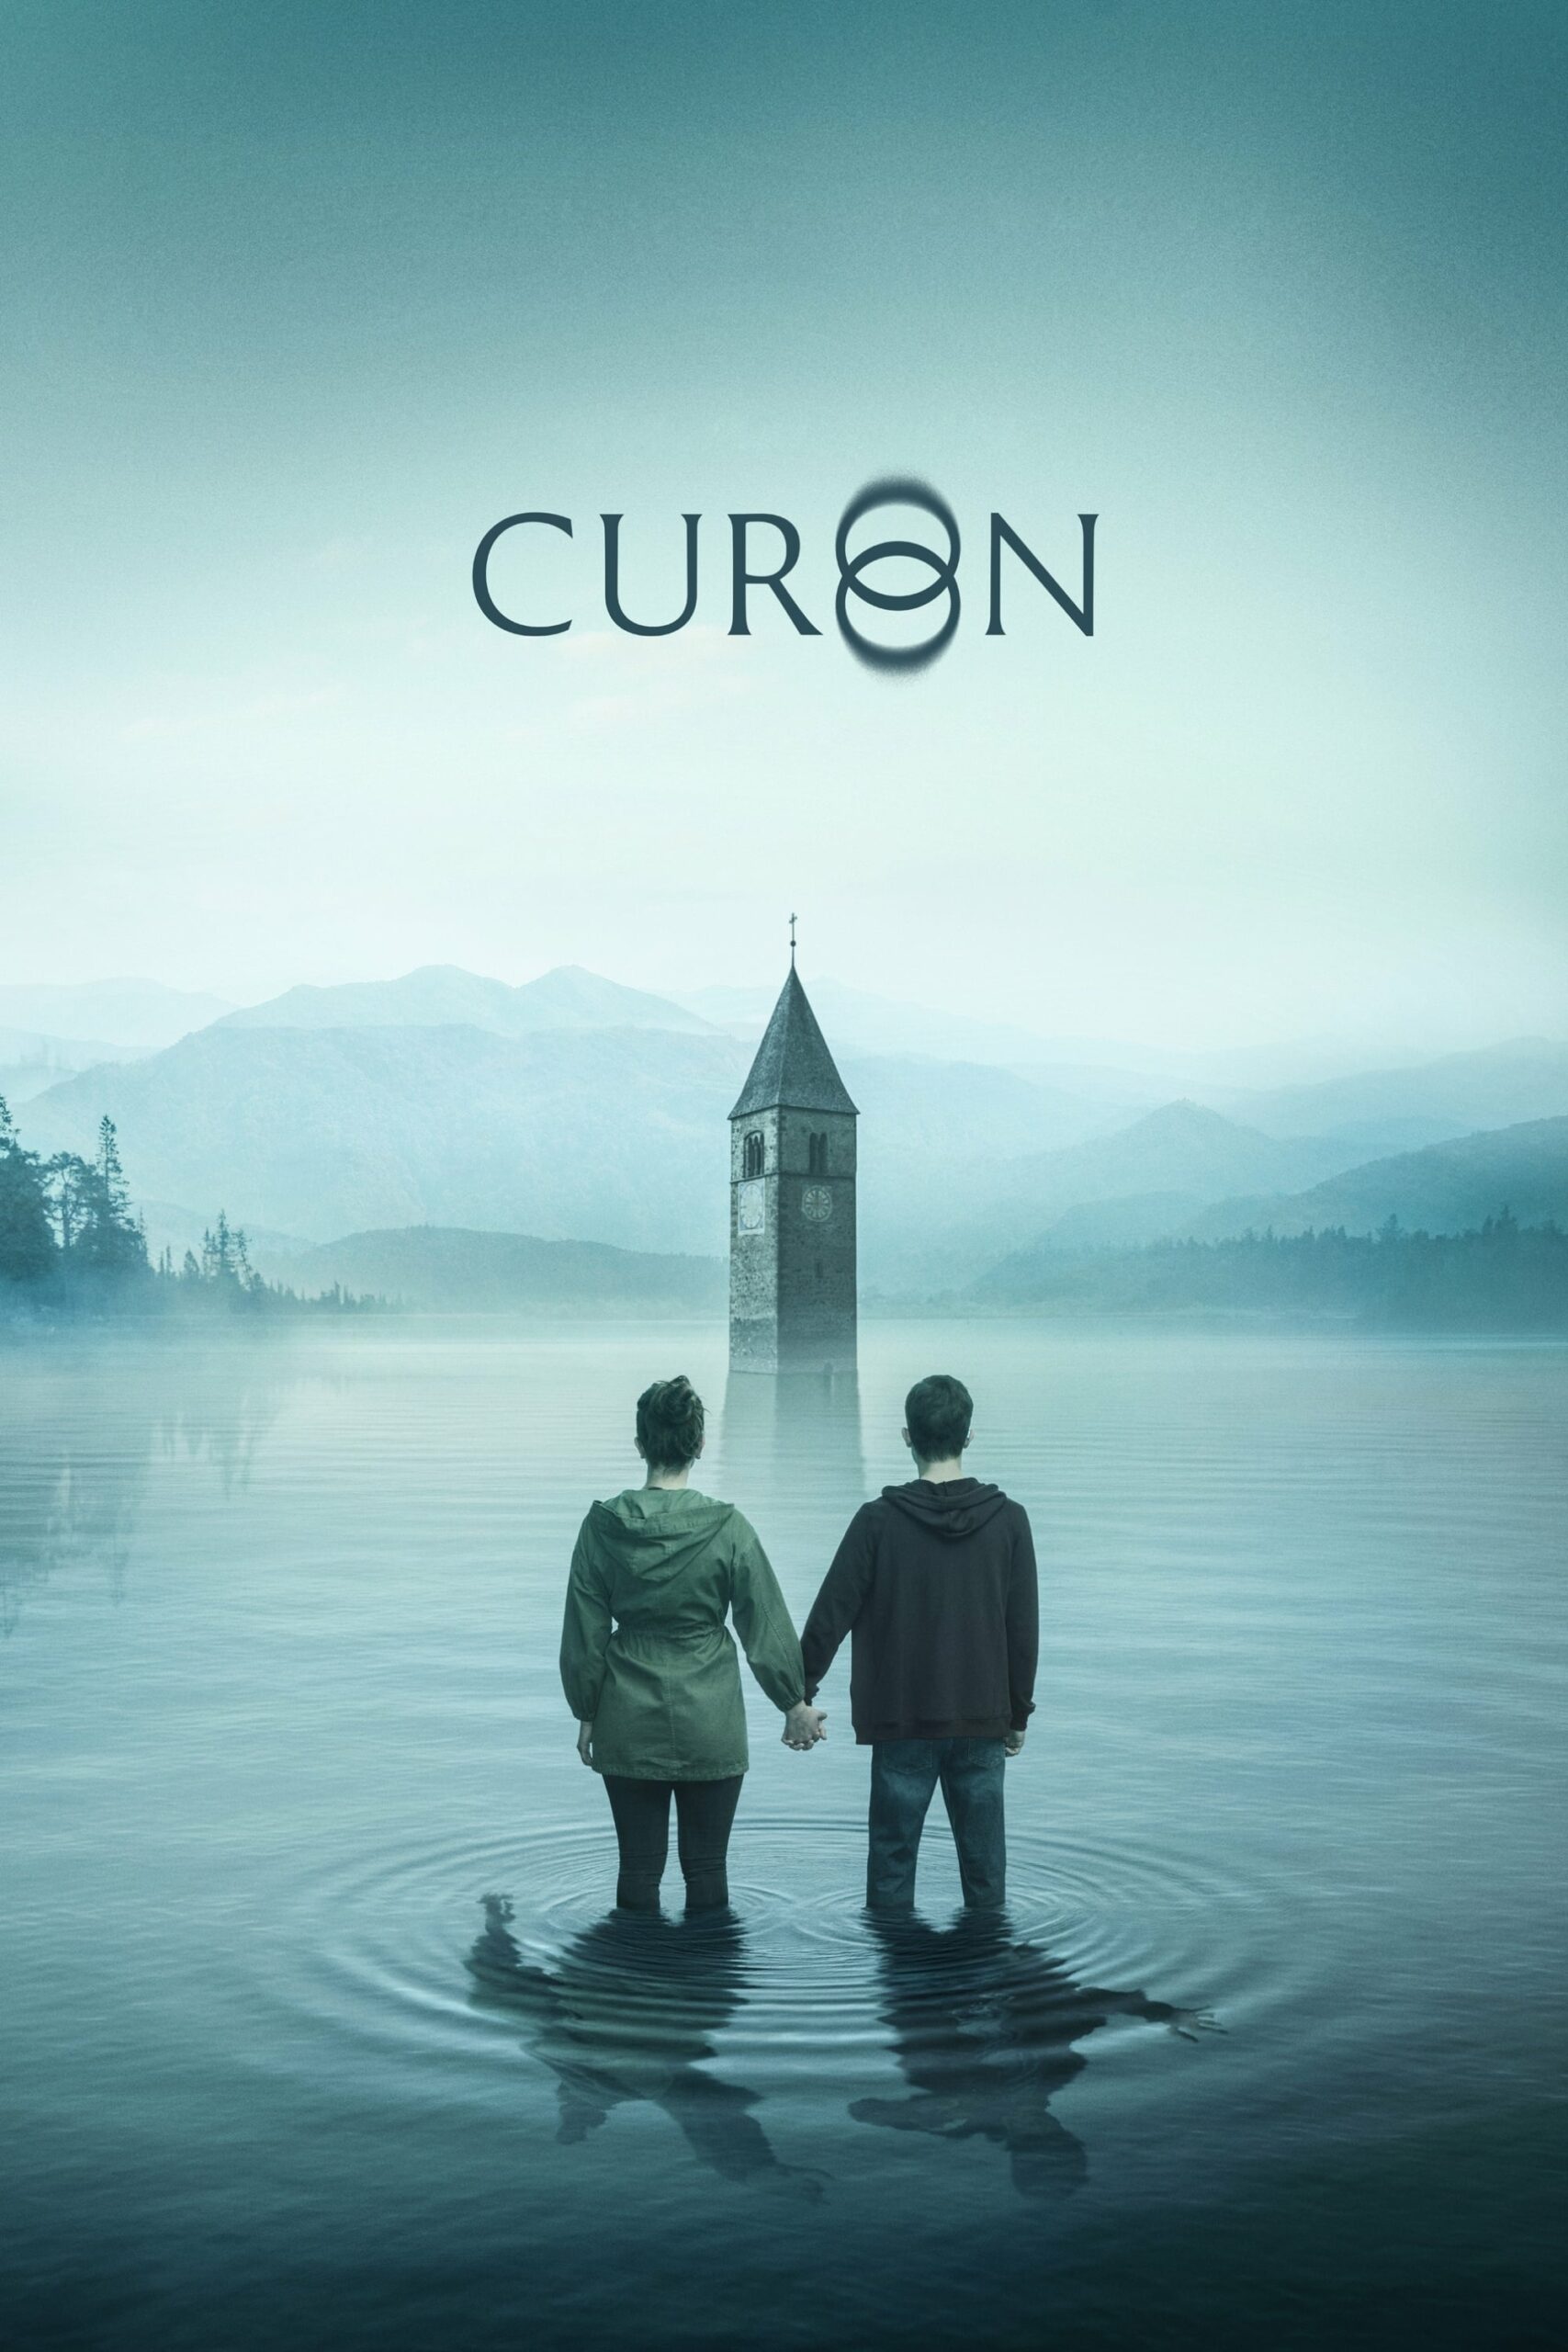 Plakát pro film “Curon”